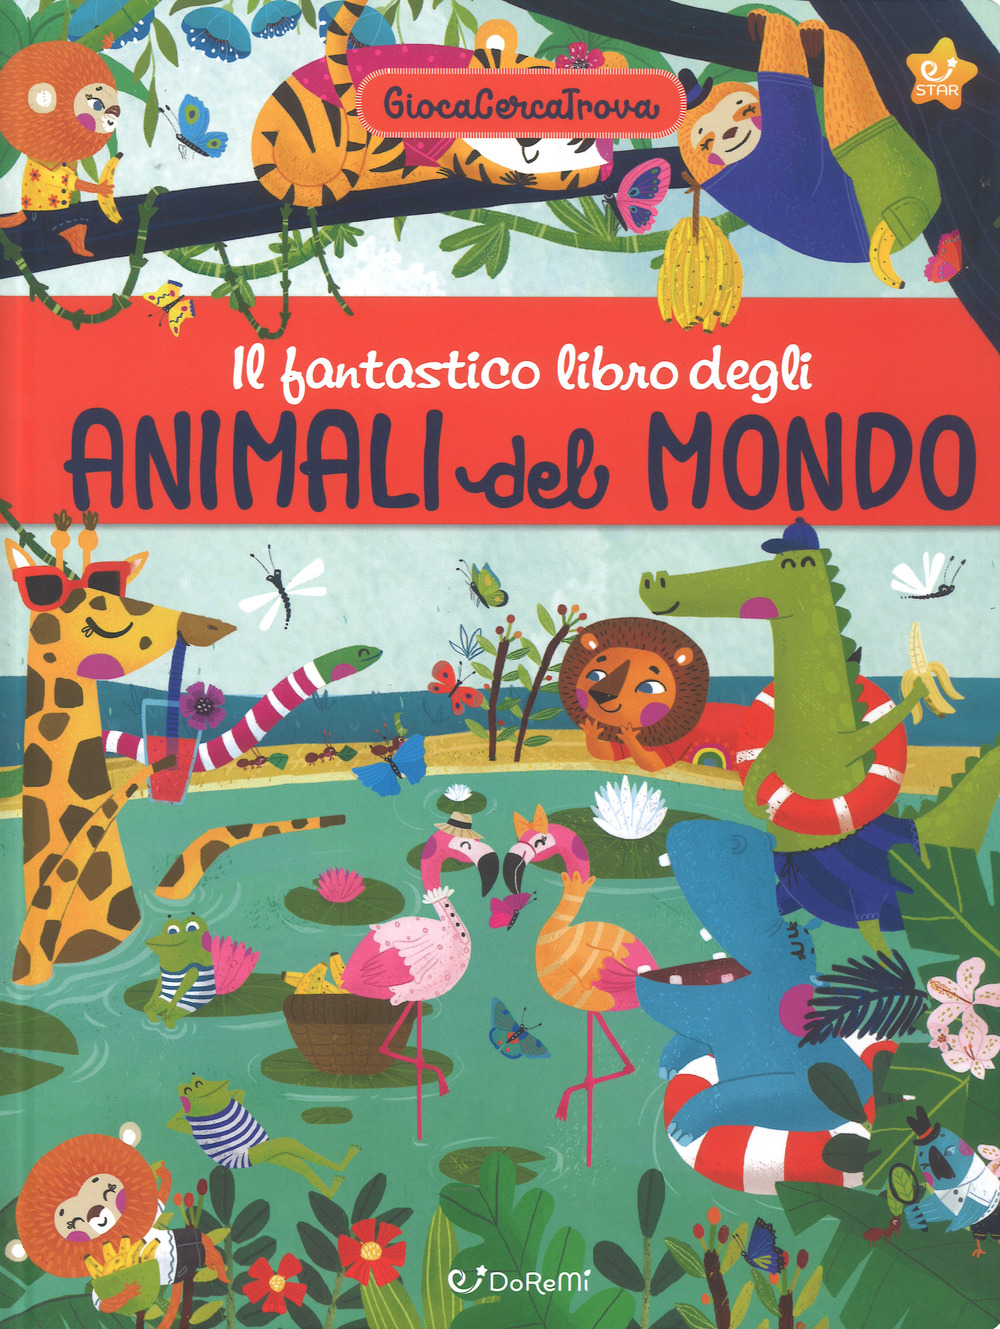 Il fantastico libro degli animali del mondo. GiocaCercaTrova